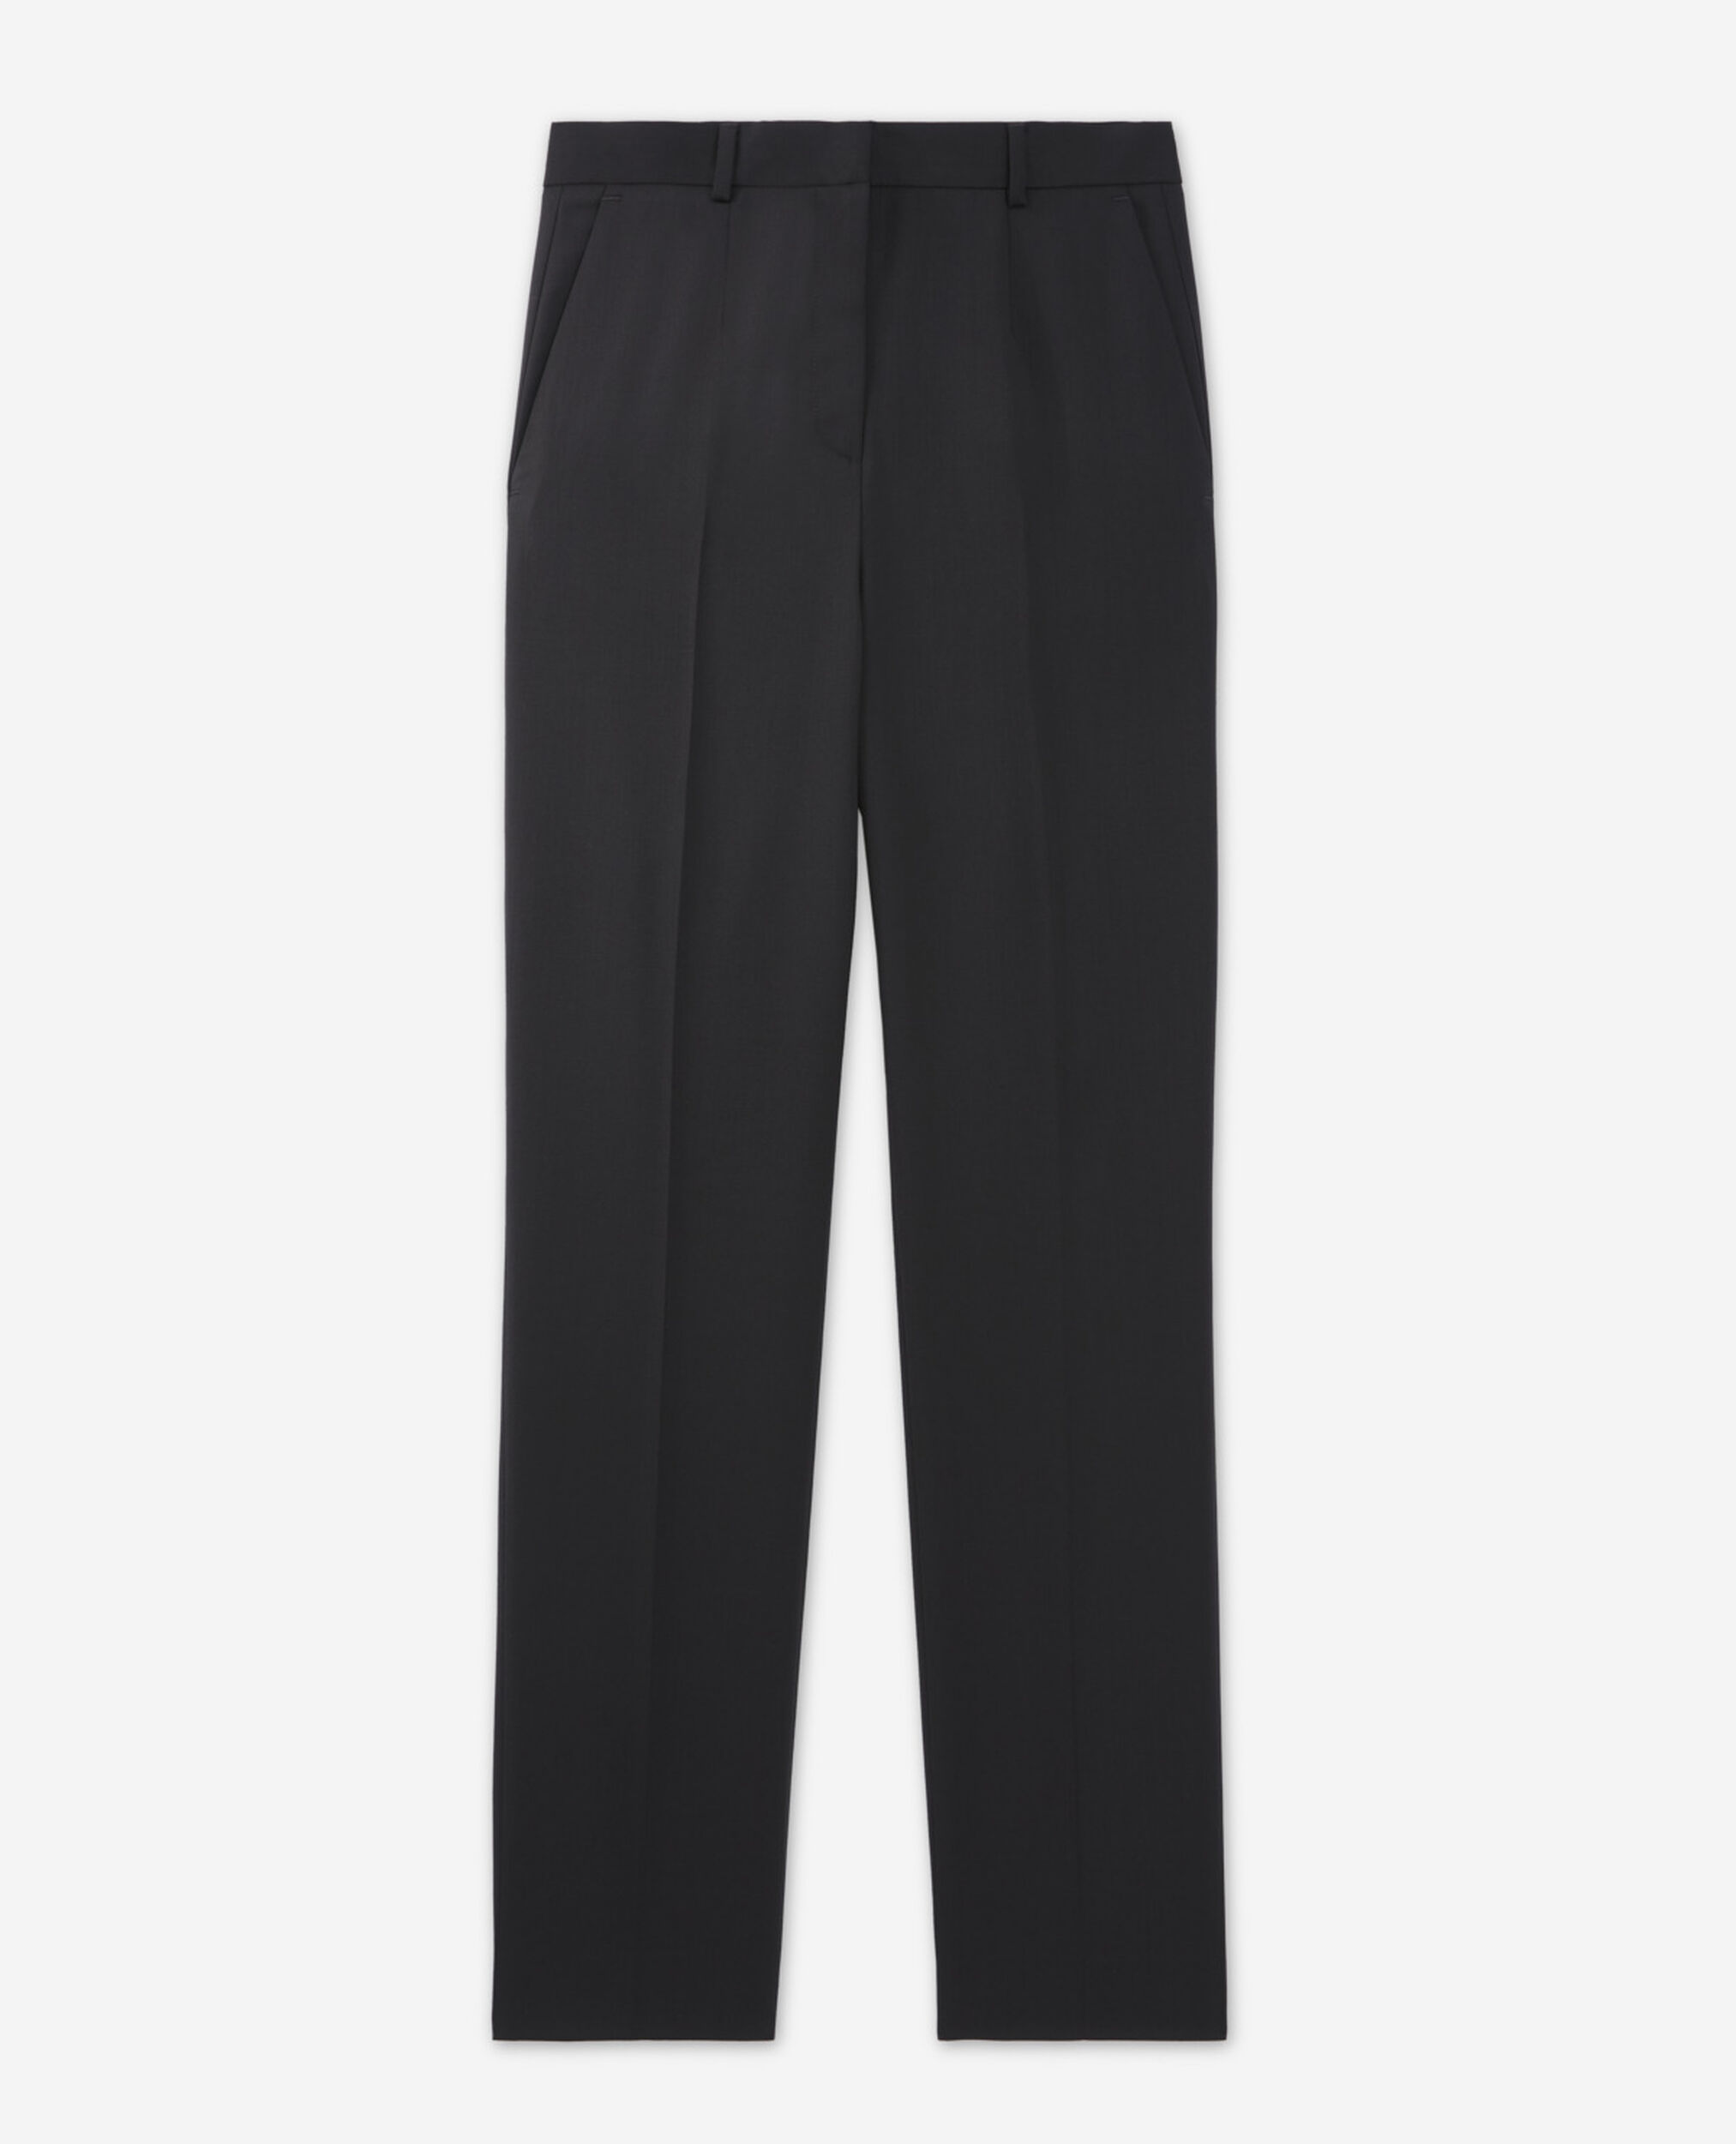 Pantalon costume noir laine détail cuir, BLACK, hi-res image number null